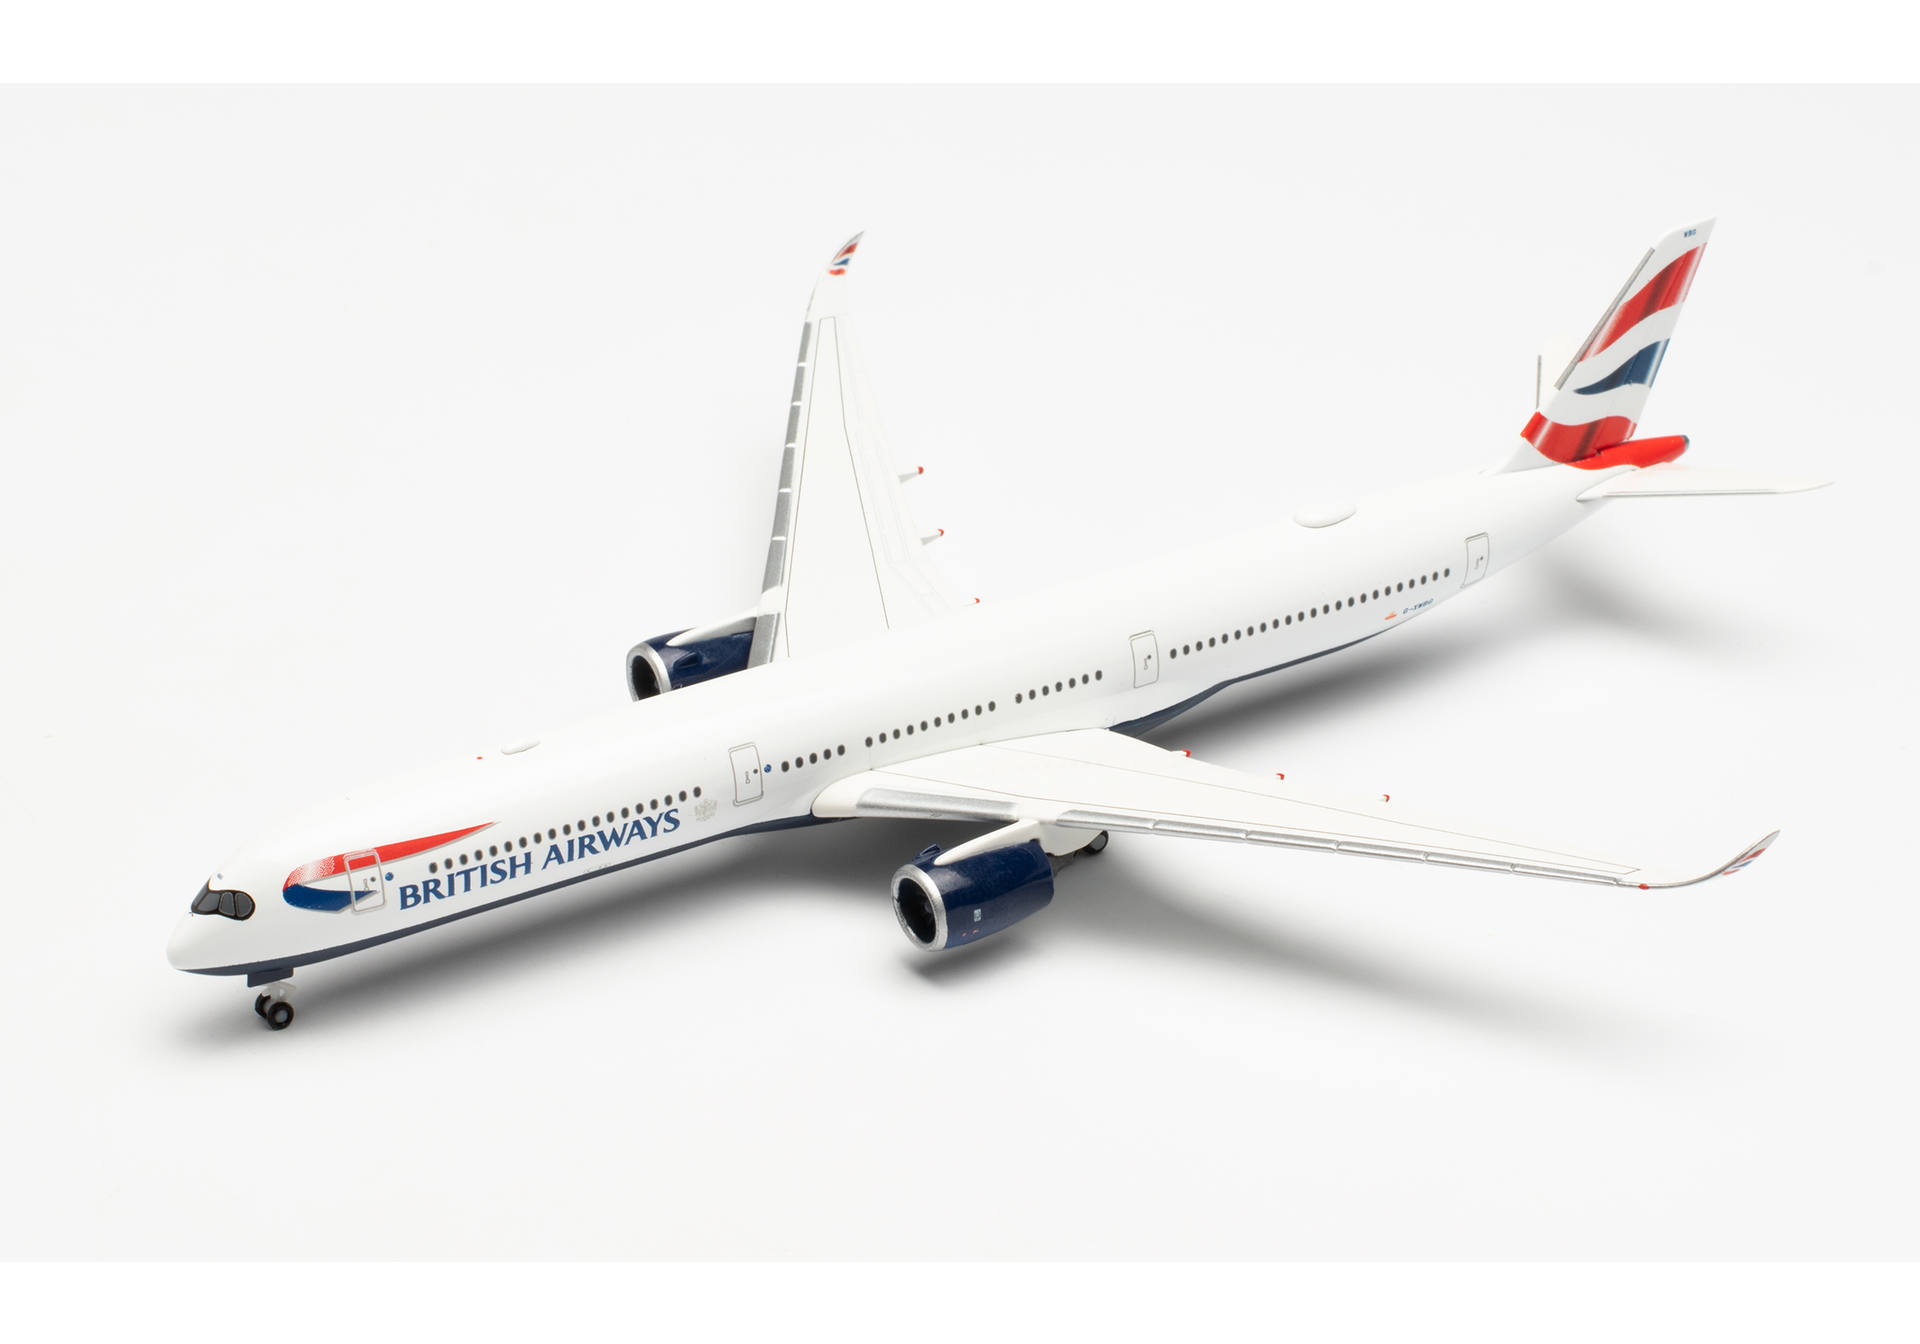   Airbus A350-1000 British Airways - G-XWBG, 1:500, 533126-002.  # 3 hobbyplus.ru